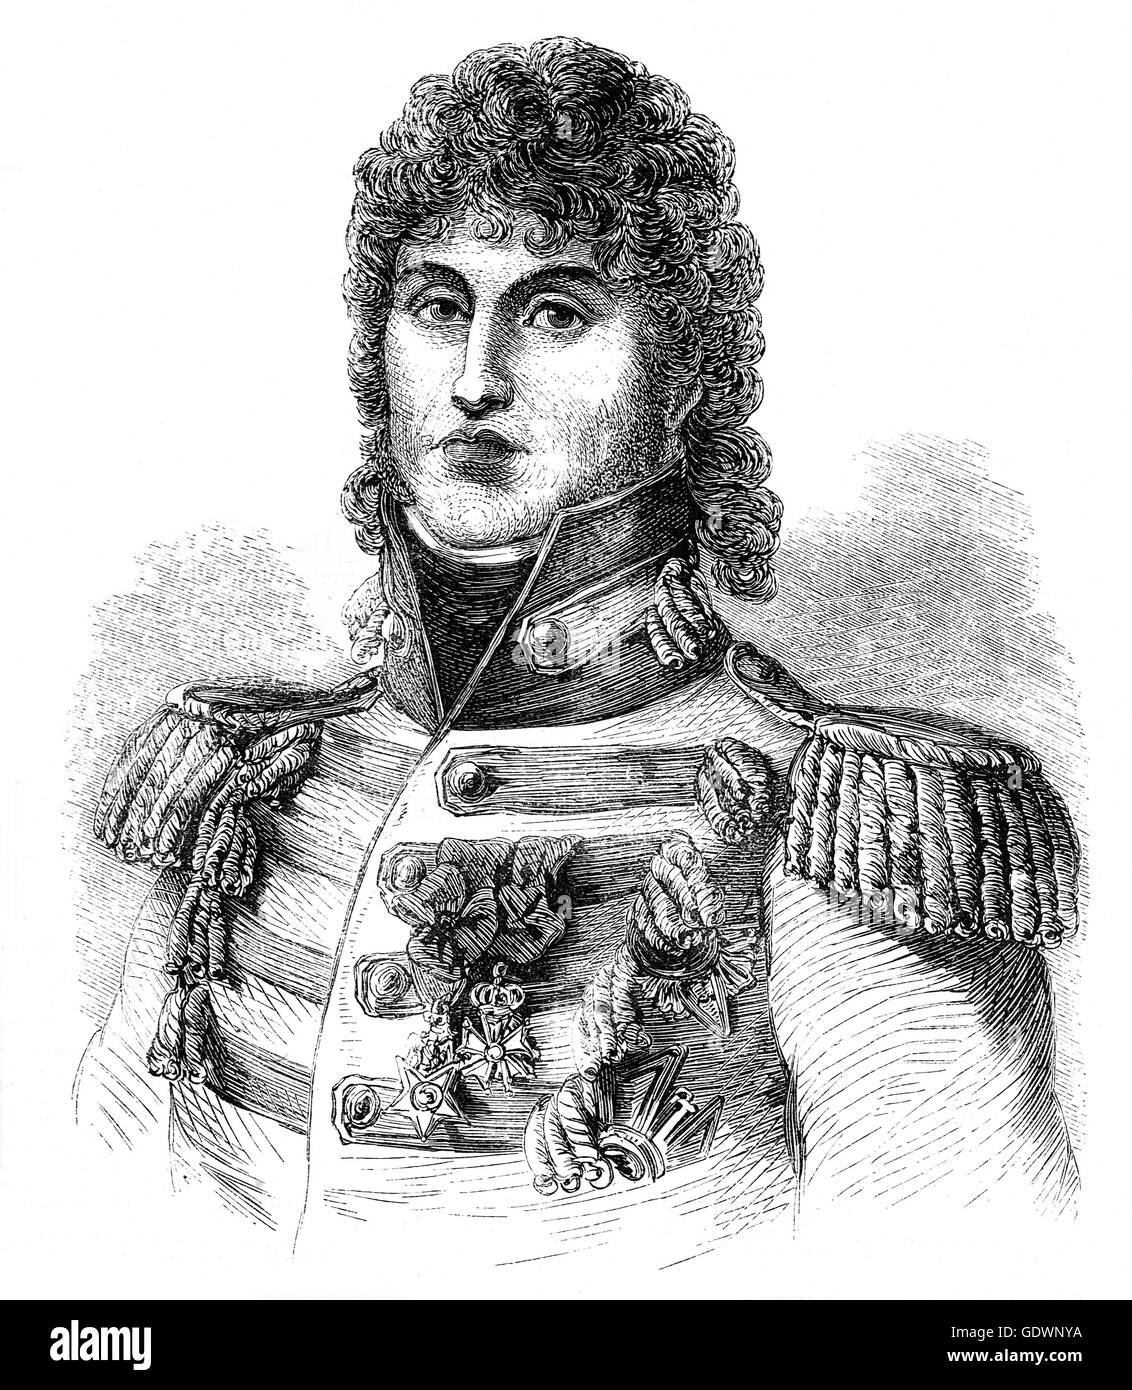 Général Joachim-Napoléon Murat (1767 - 1815) était un maréchal de France et Amiral de France sous le règne de Napoléon. Il a été aussi le 1er prince Murat, Grand-duc de Berg de 1806 à 1808, et Roi de Naples de 1808 à 1815. Il a reçu ses titres dans la partie en étant Napoléon le beau-frère par le mariage de sa plus jeune sœur, Caroline Bonaparte, ainsi que le mérite personnel. Banque D'Images